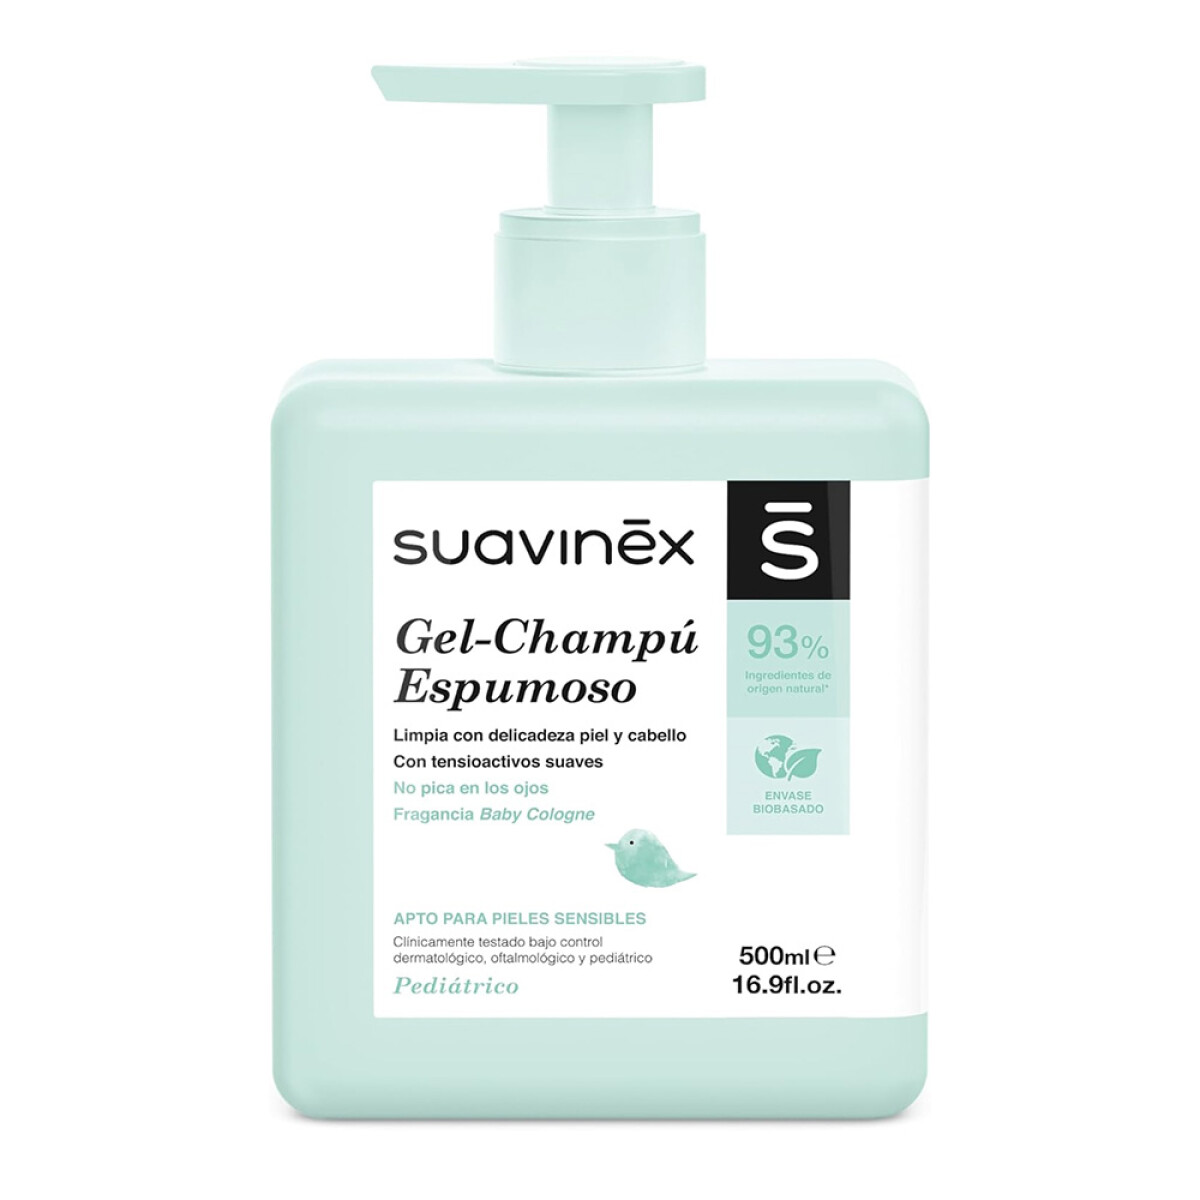 Gel Shampoo Espumoso p/Baño Cuerpo Pelo Bebé Suavinex 500Ml - Verde 